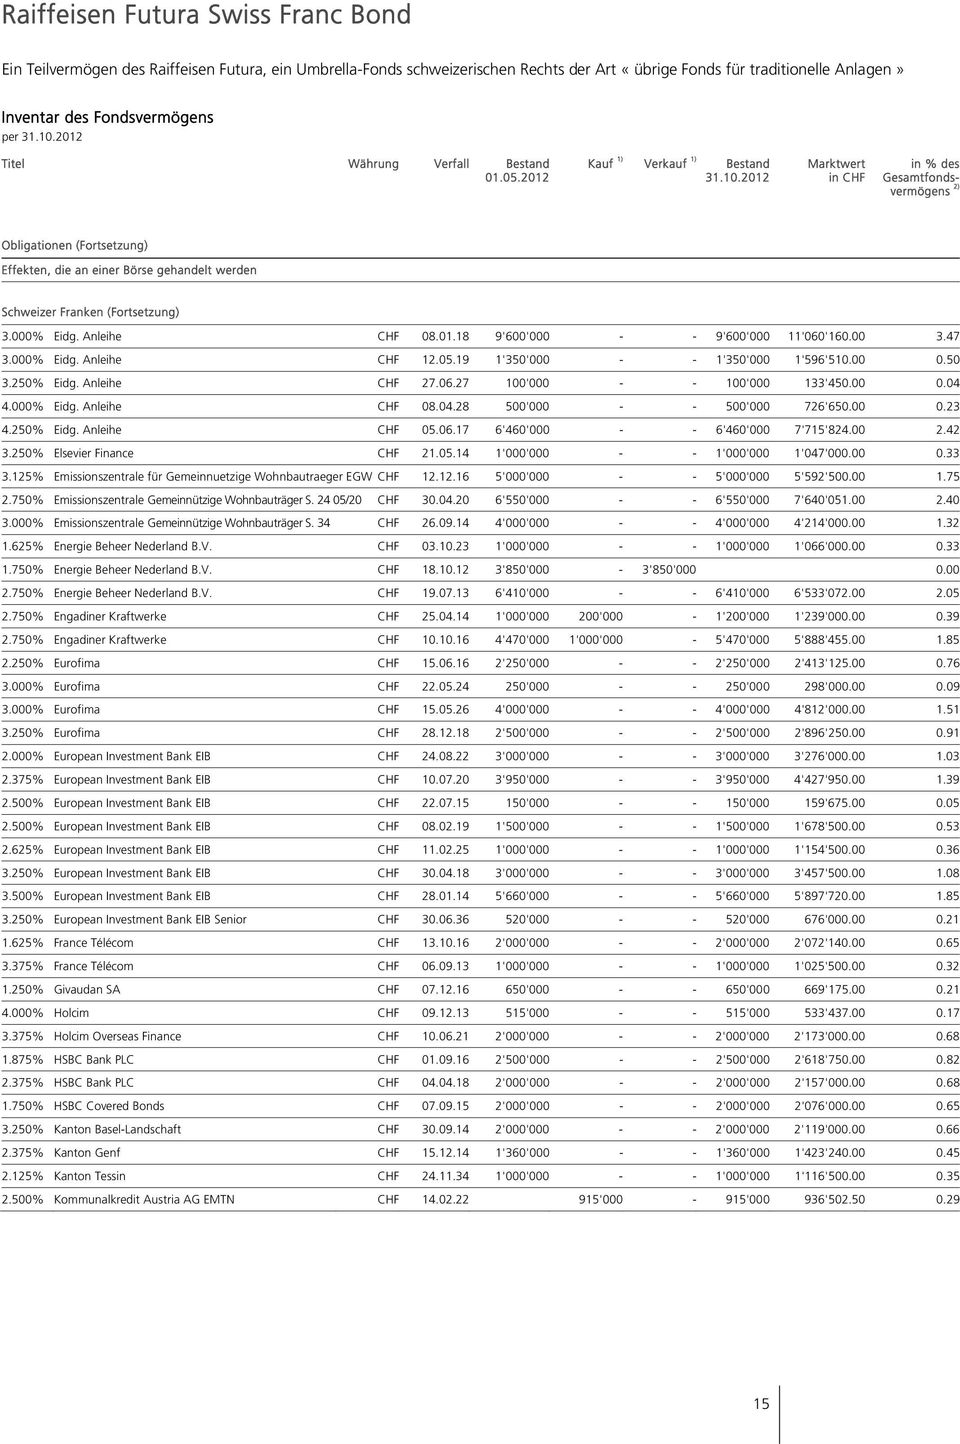 2012 Marktwert in CHF in % des Gesamtfondsvermögens 2) Obligationen (Fortsetzung) Effekten, die an einer Börse gehandelt werden Schweizer Franken (Fortsetzung) 3.000% Eidg. Anleihe CHF 08.01.18 9'600'000 - - 9'600'000 11'060'160.